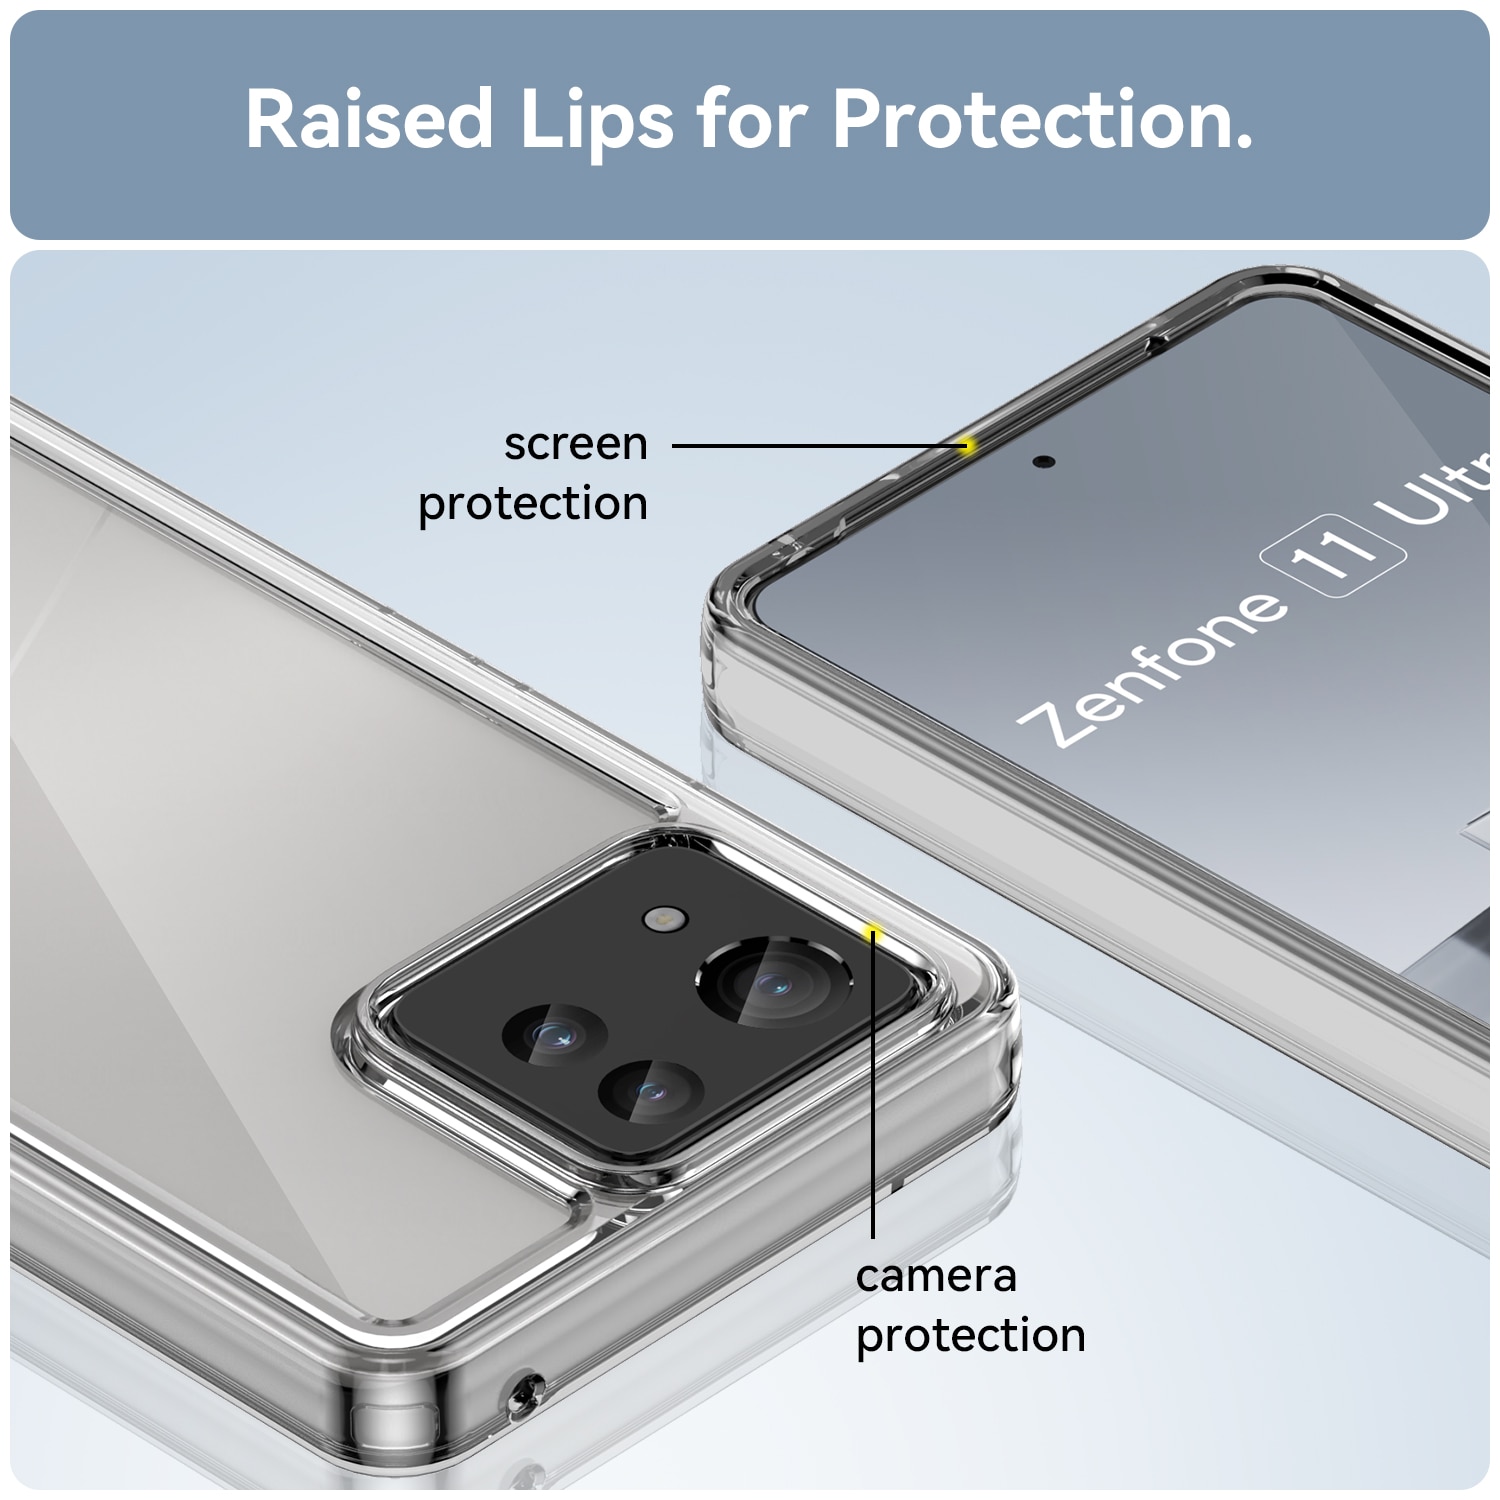 Asus Zenfone 11 Ultra Crystal Hybrid Case Transparent